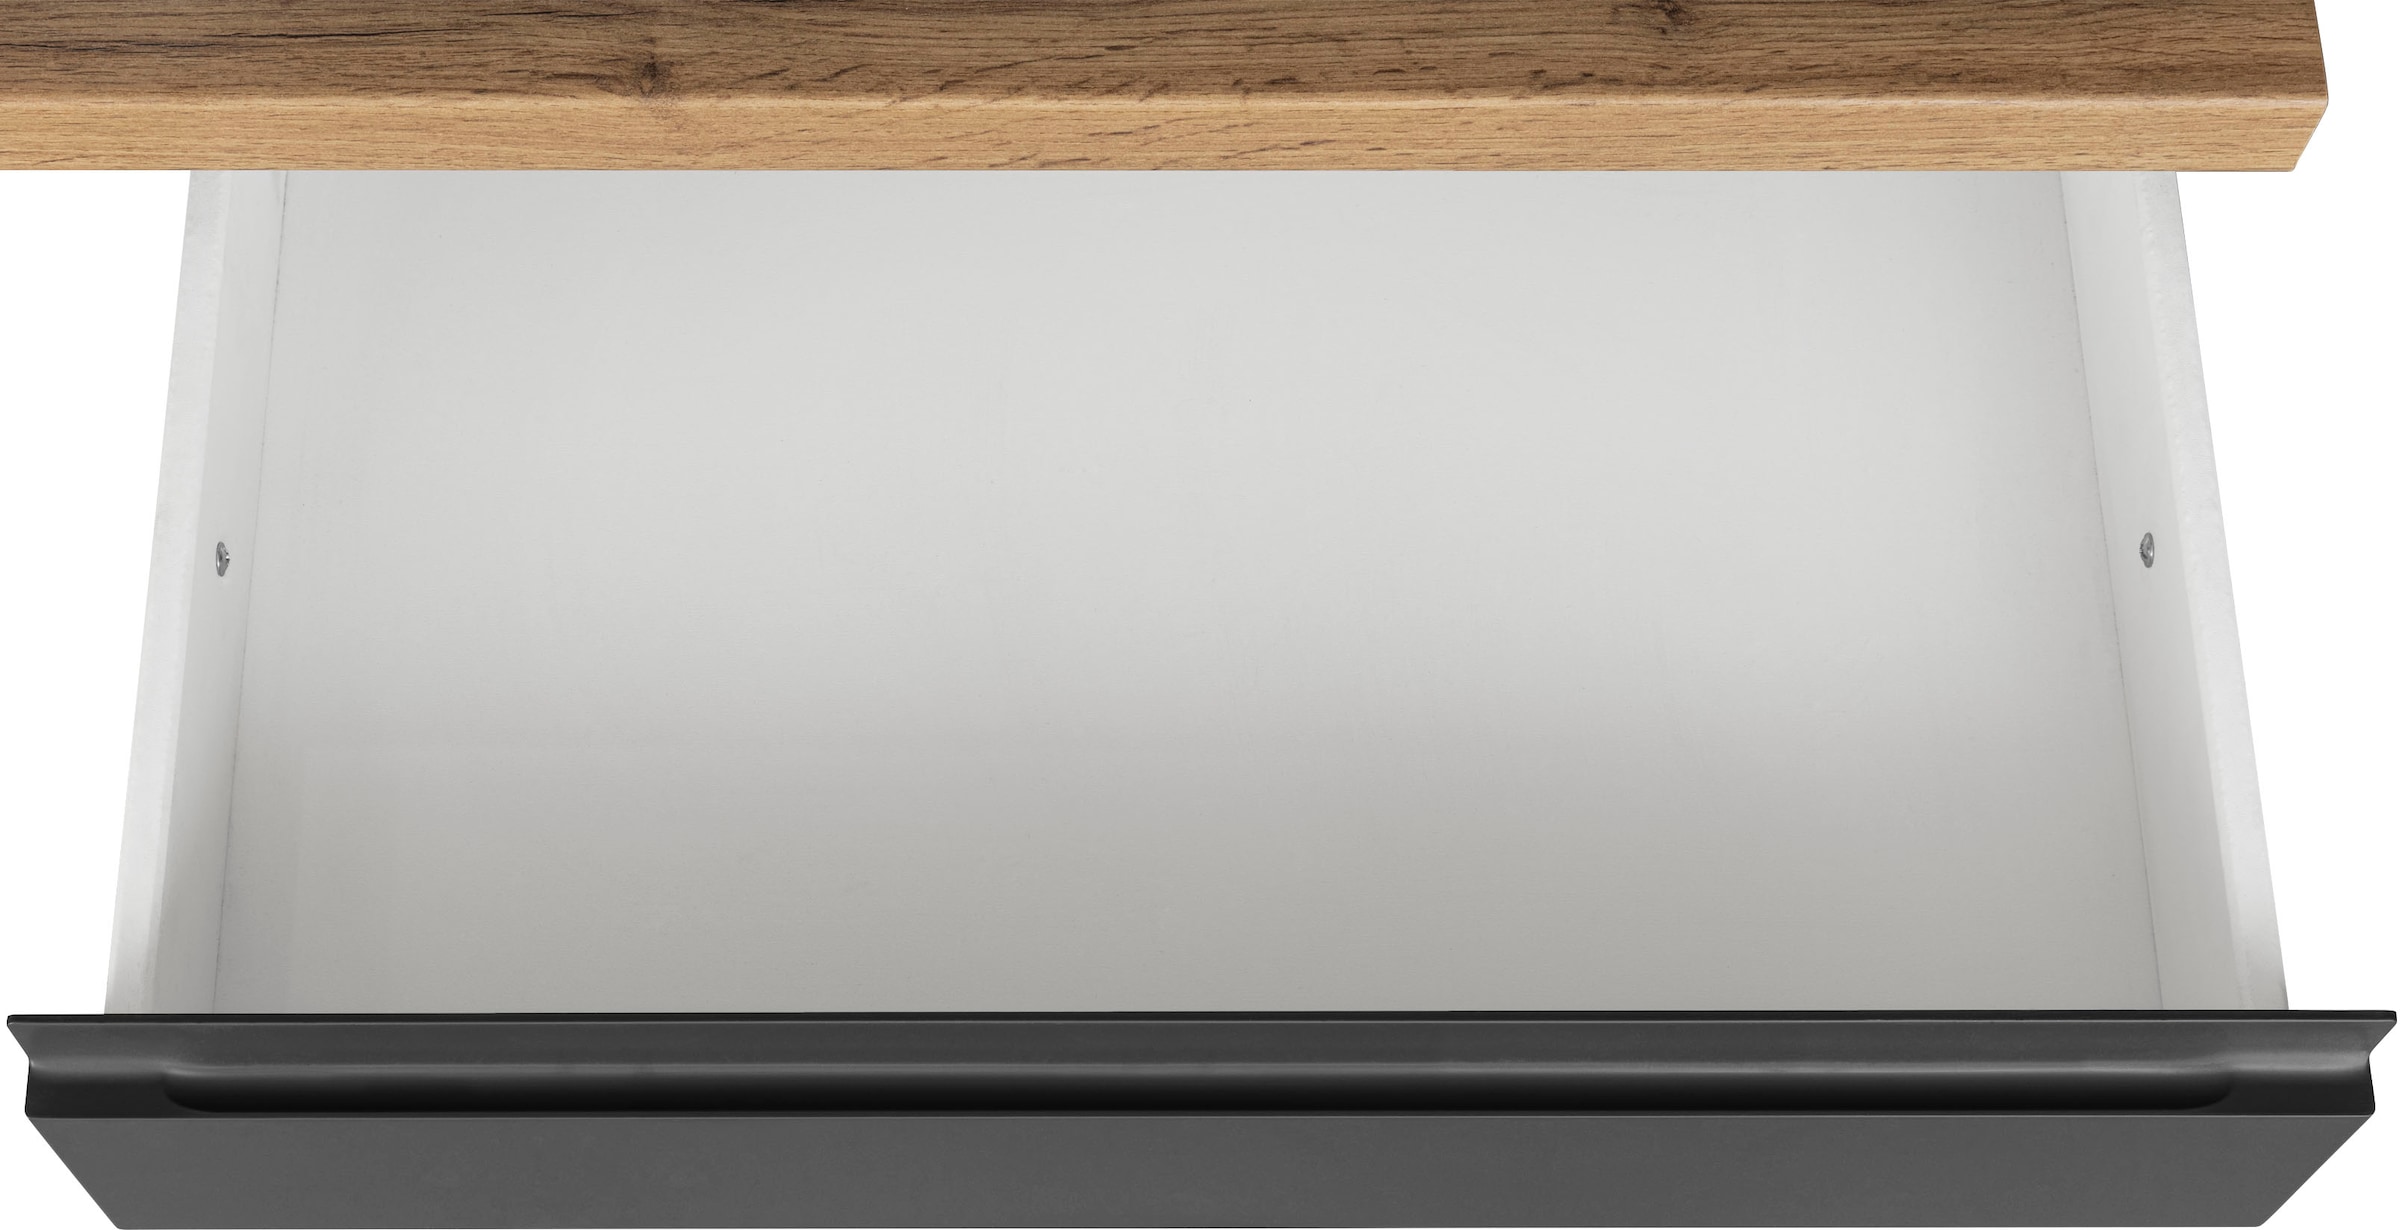 HELD MÖBEL Küche »Bruneck«, 380cm breit, kaufen oder OTTO mit hochwertige MDF-Fronten ohne wahlweise E-Geräte, bei